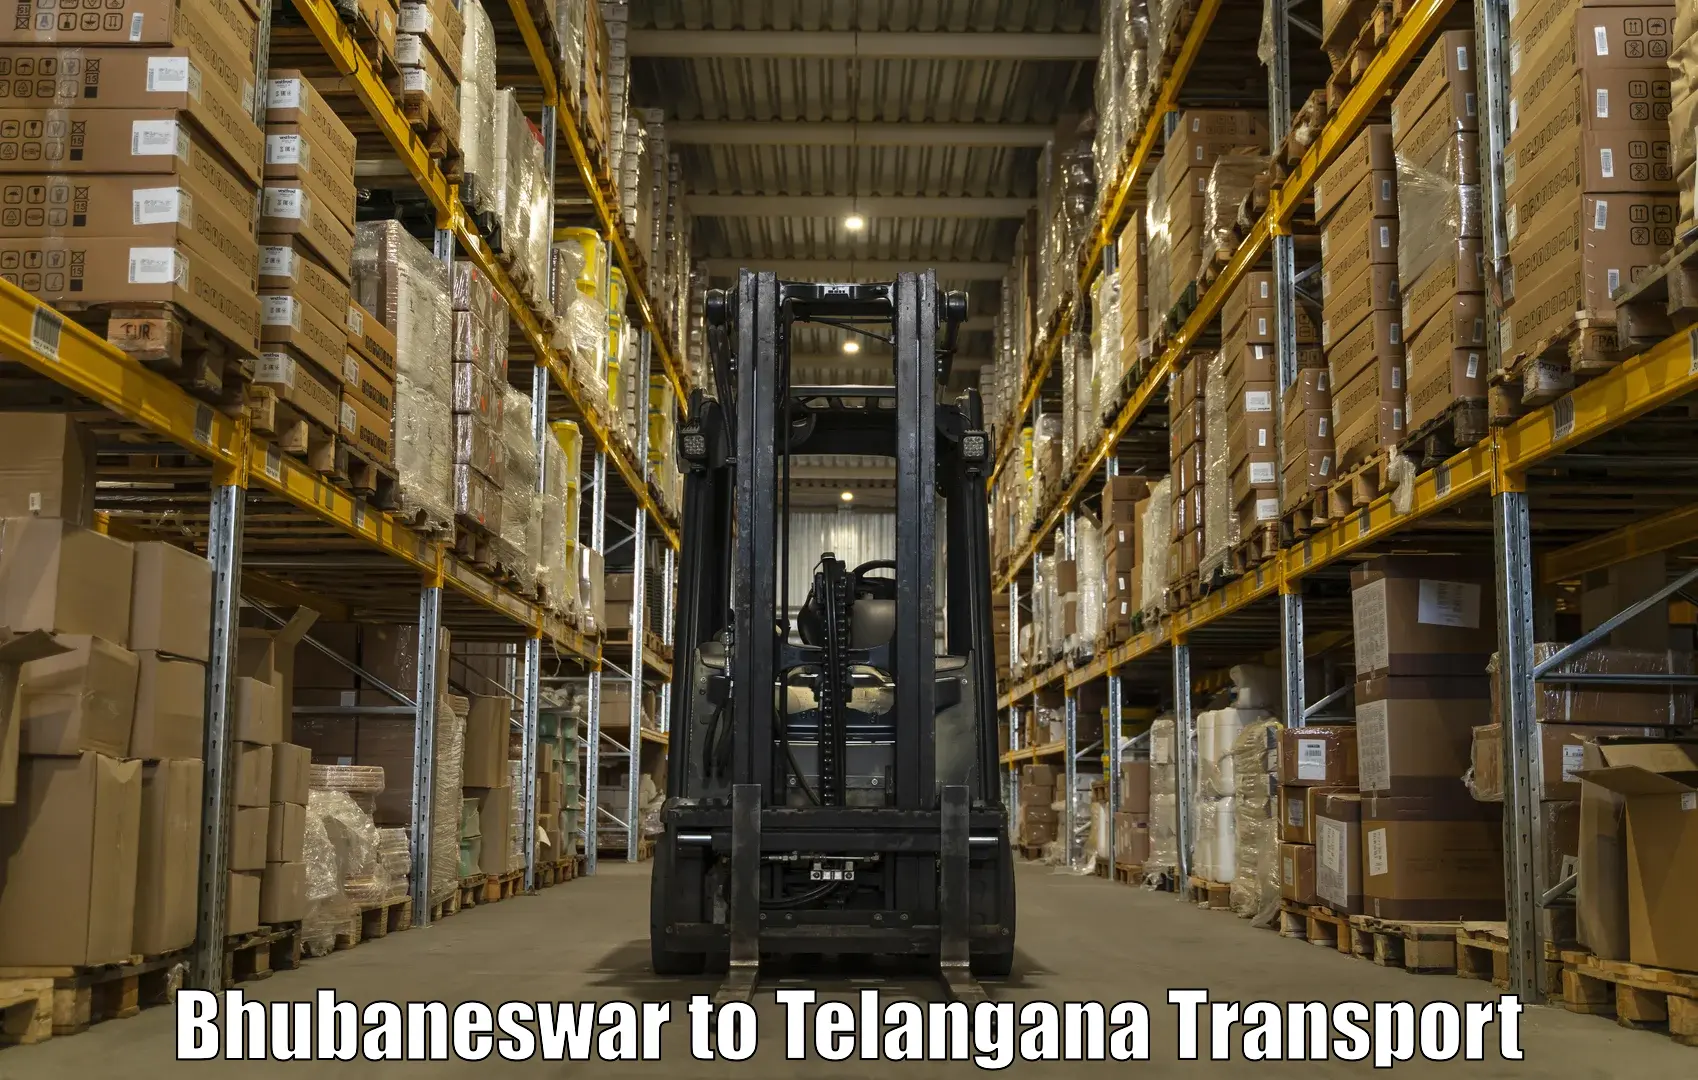 Daily parcel service transport Bhubaneswar to Kusumanchi